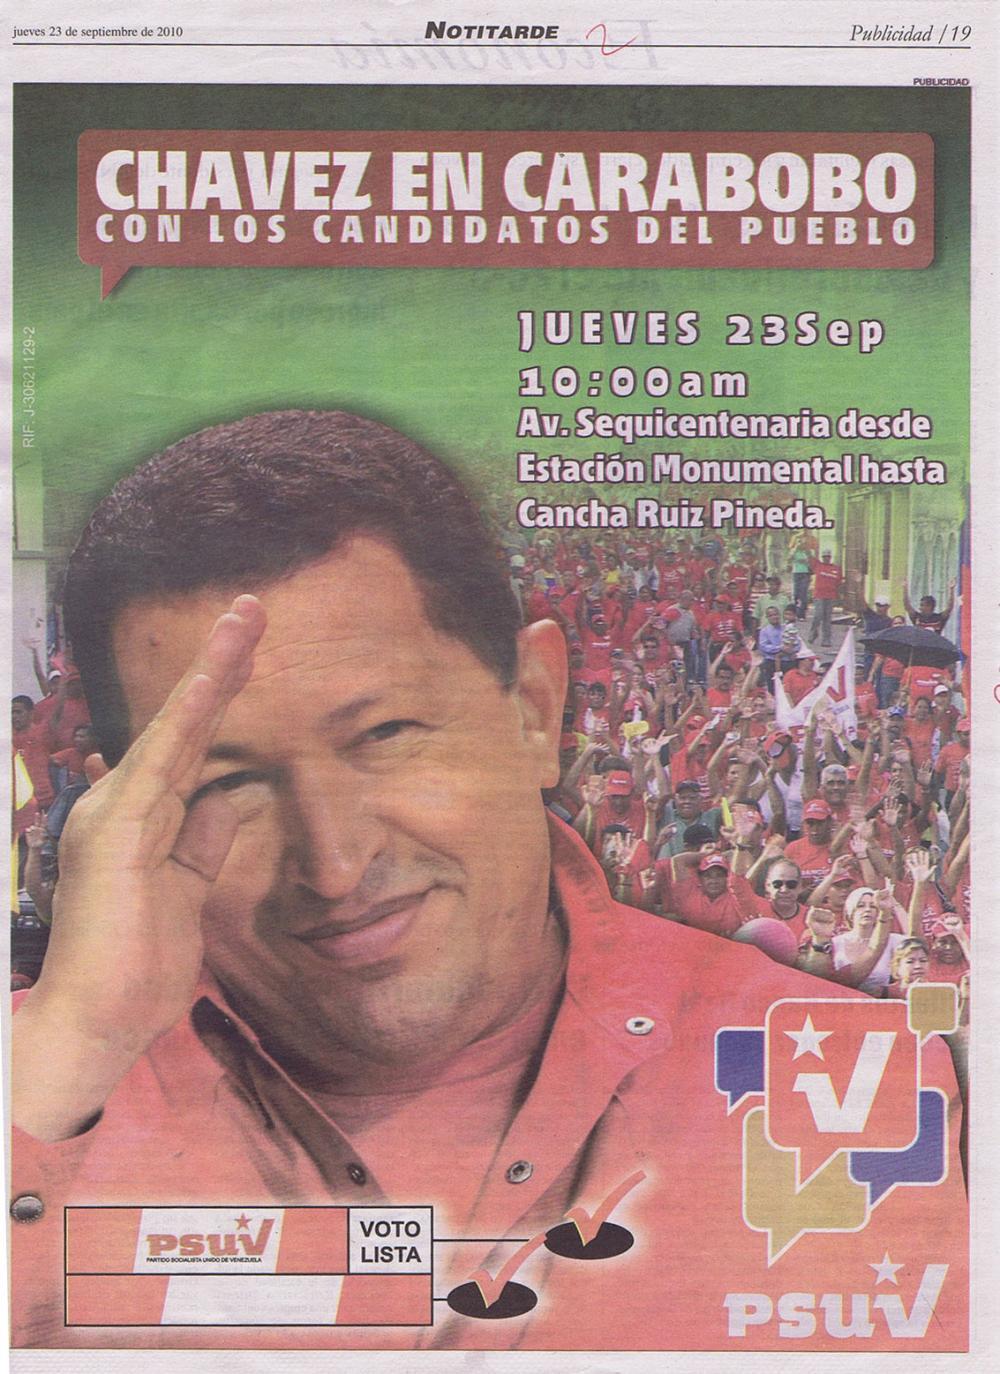 Chávez en Carabobo con los candidatos del pueblo Notitarde